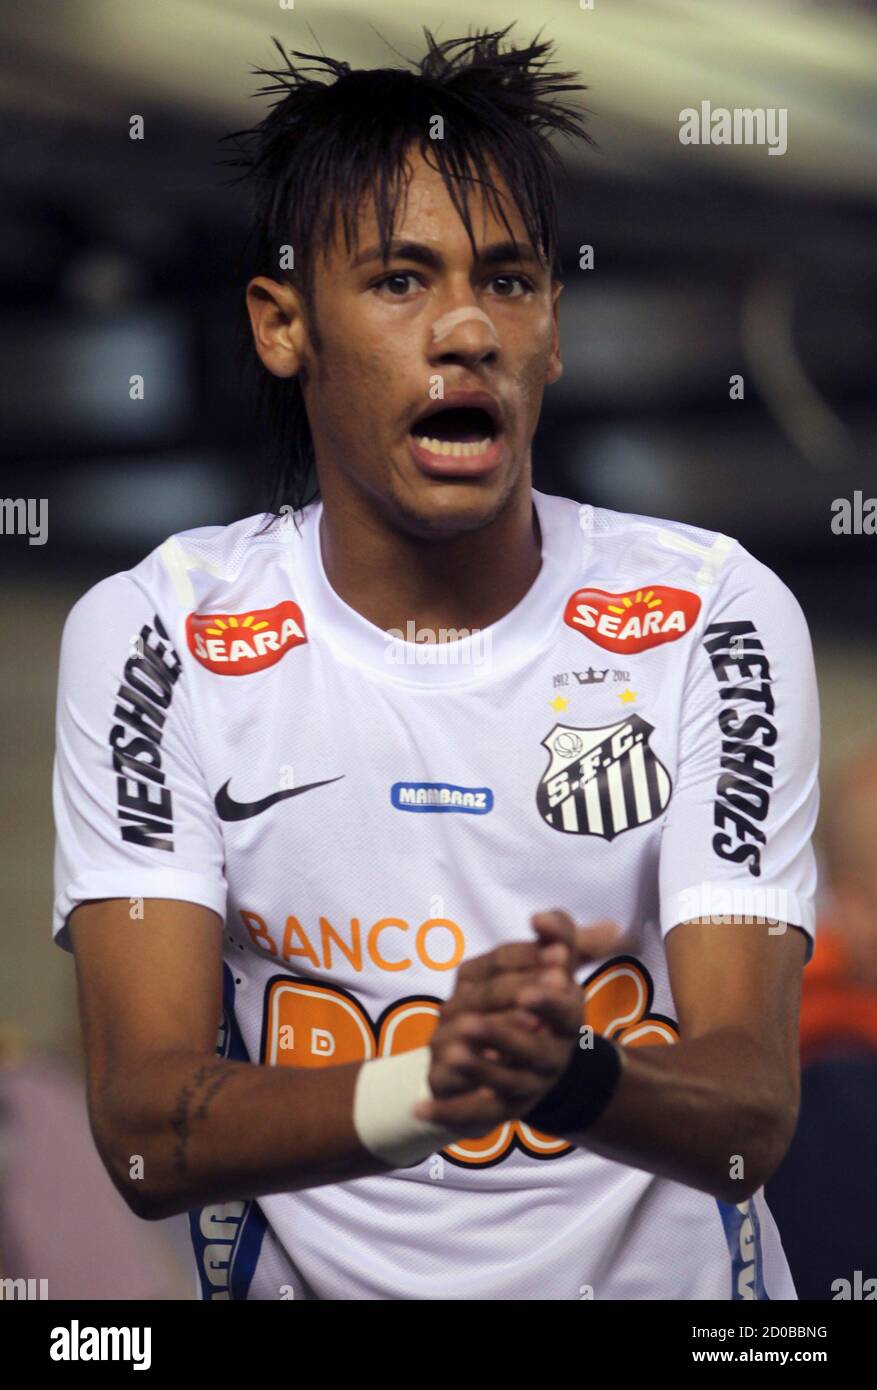 Neymar santos corinthians hi-res stock photography and images - Alamy